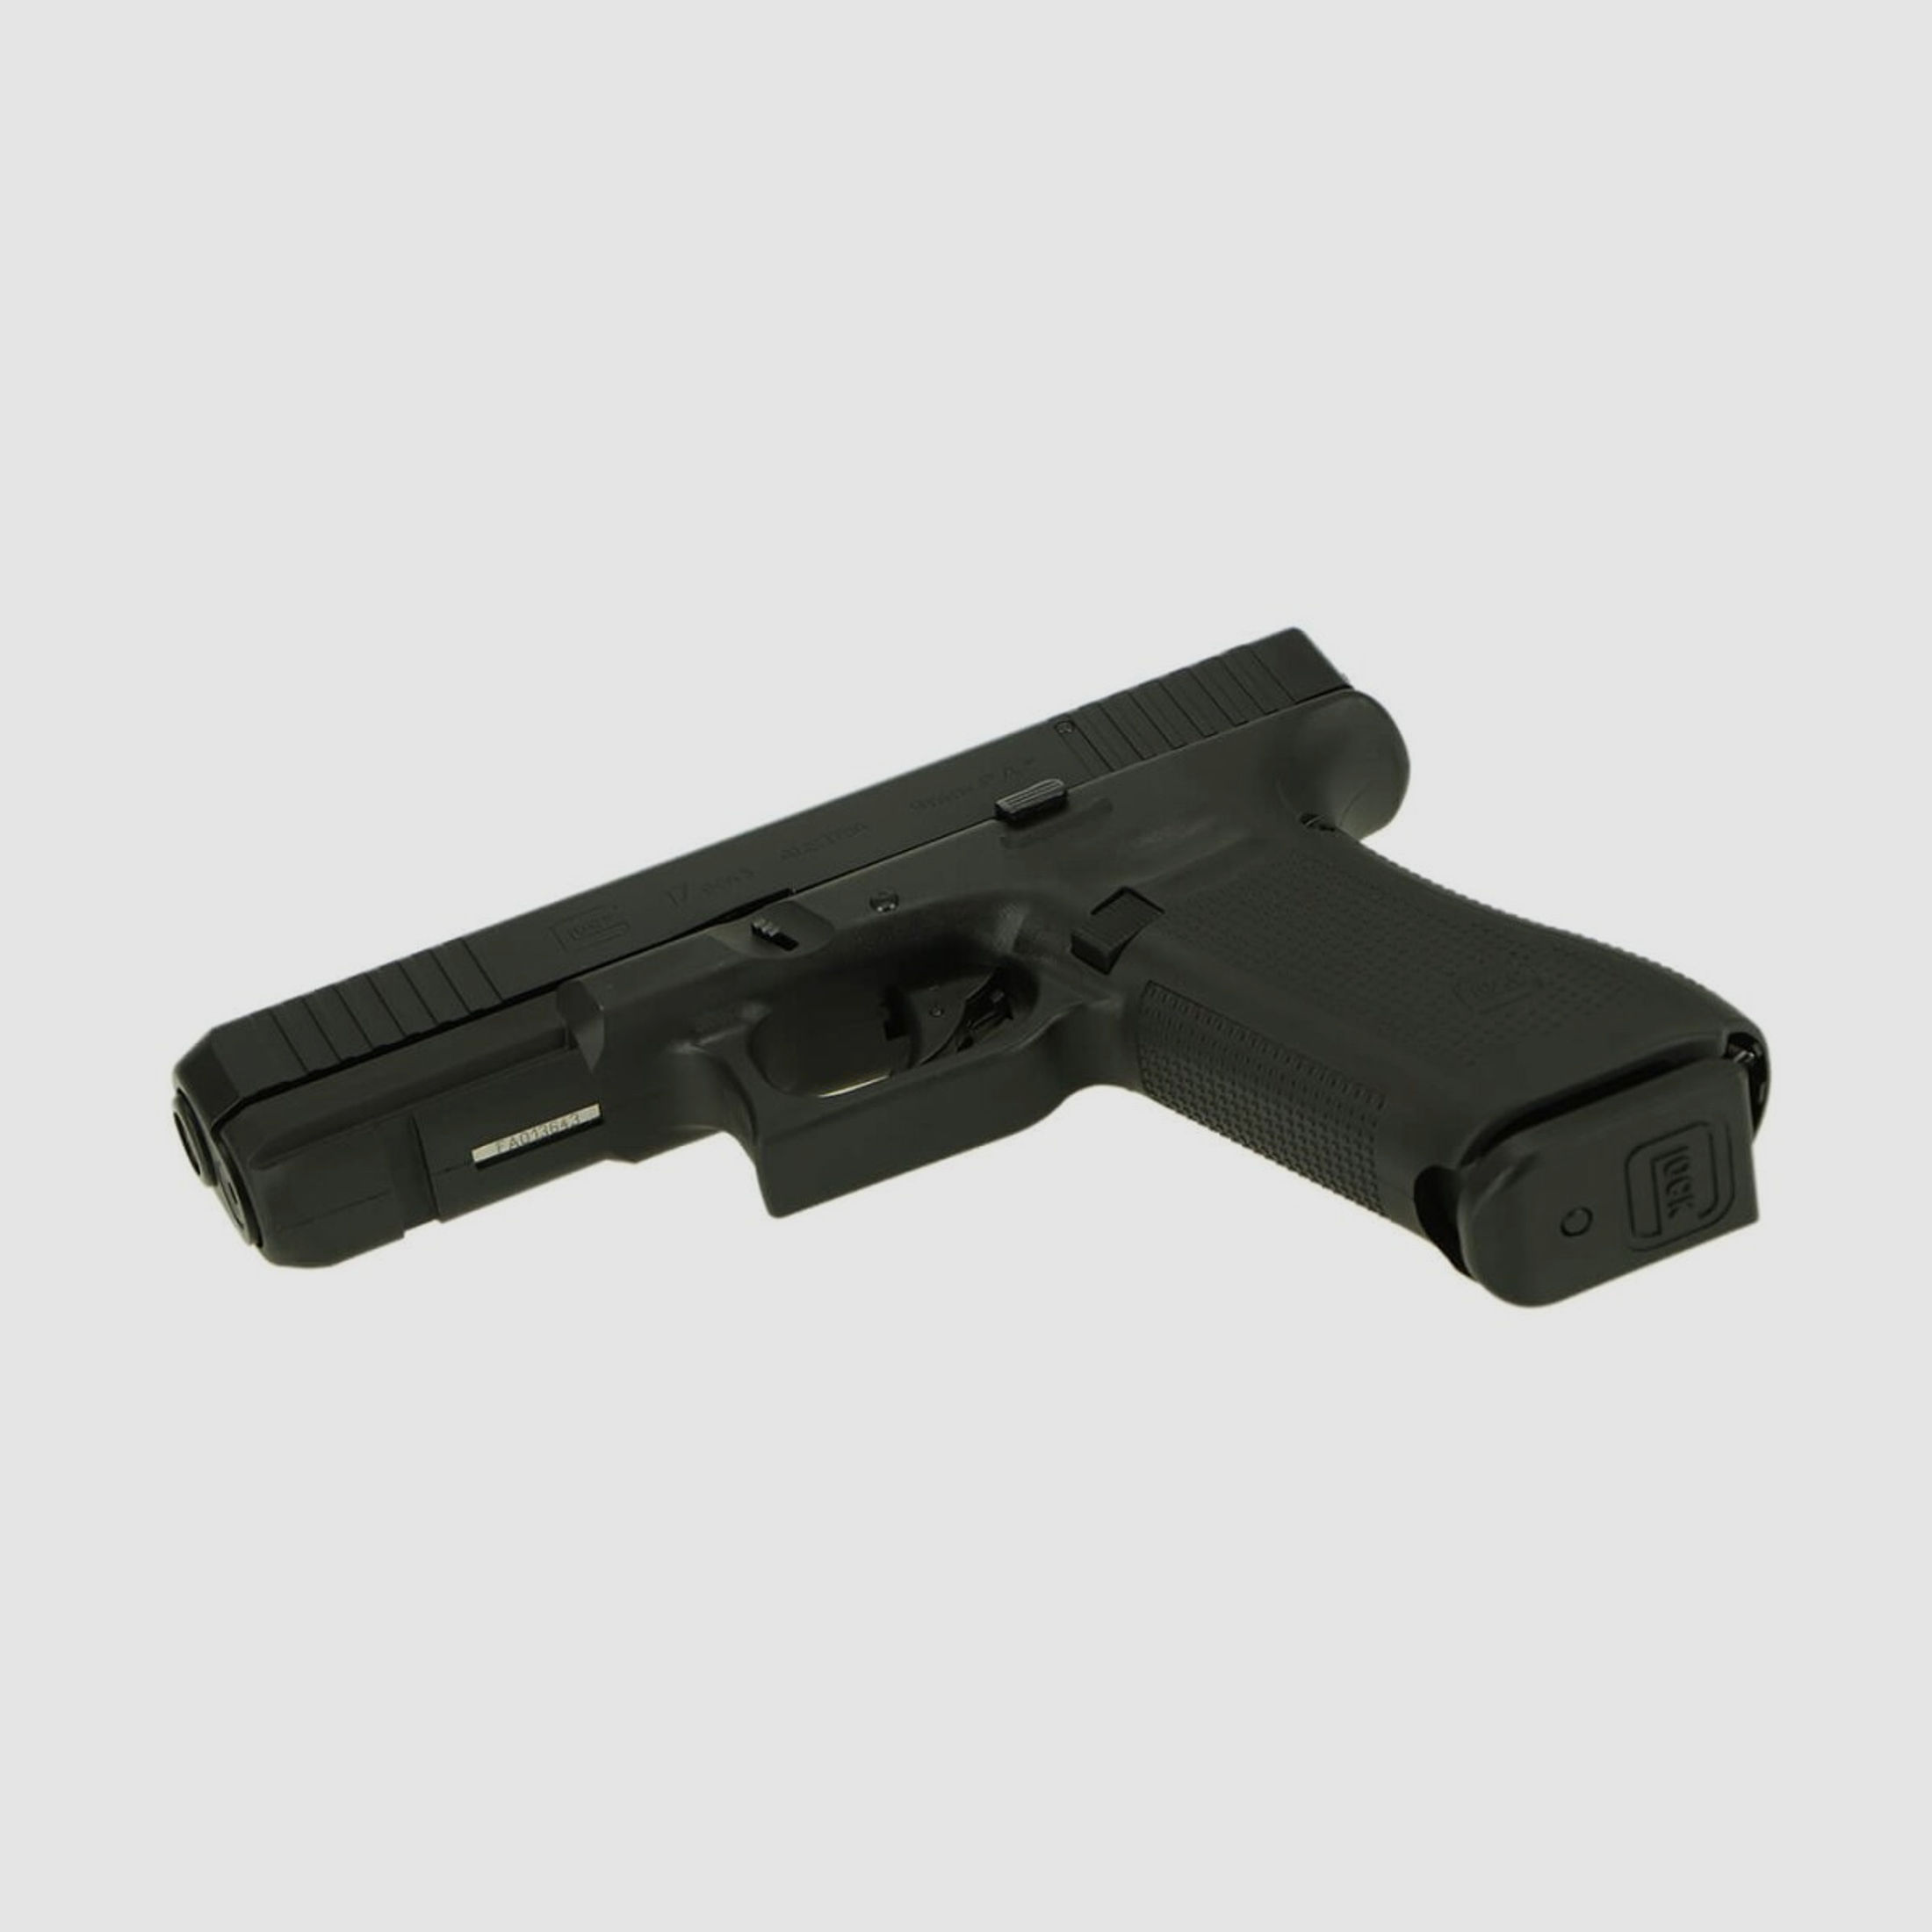 Schreckschusspistole Glock G17 Gen5 cal. 9mm P.A.K.